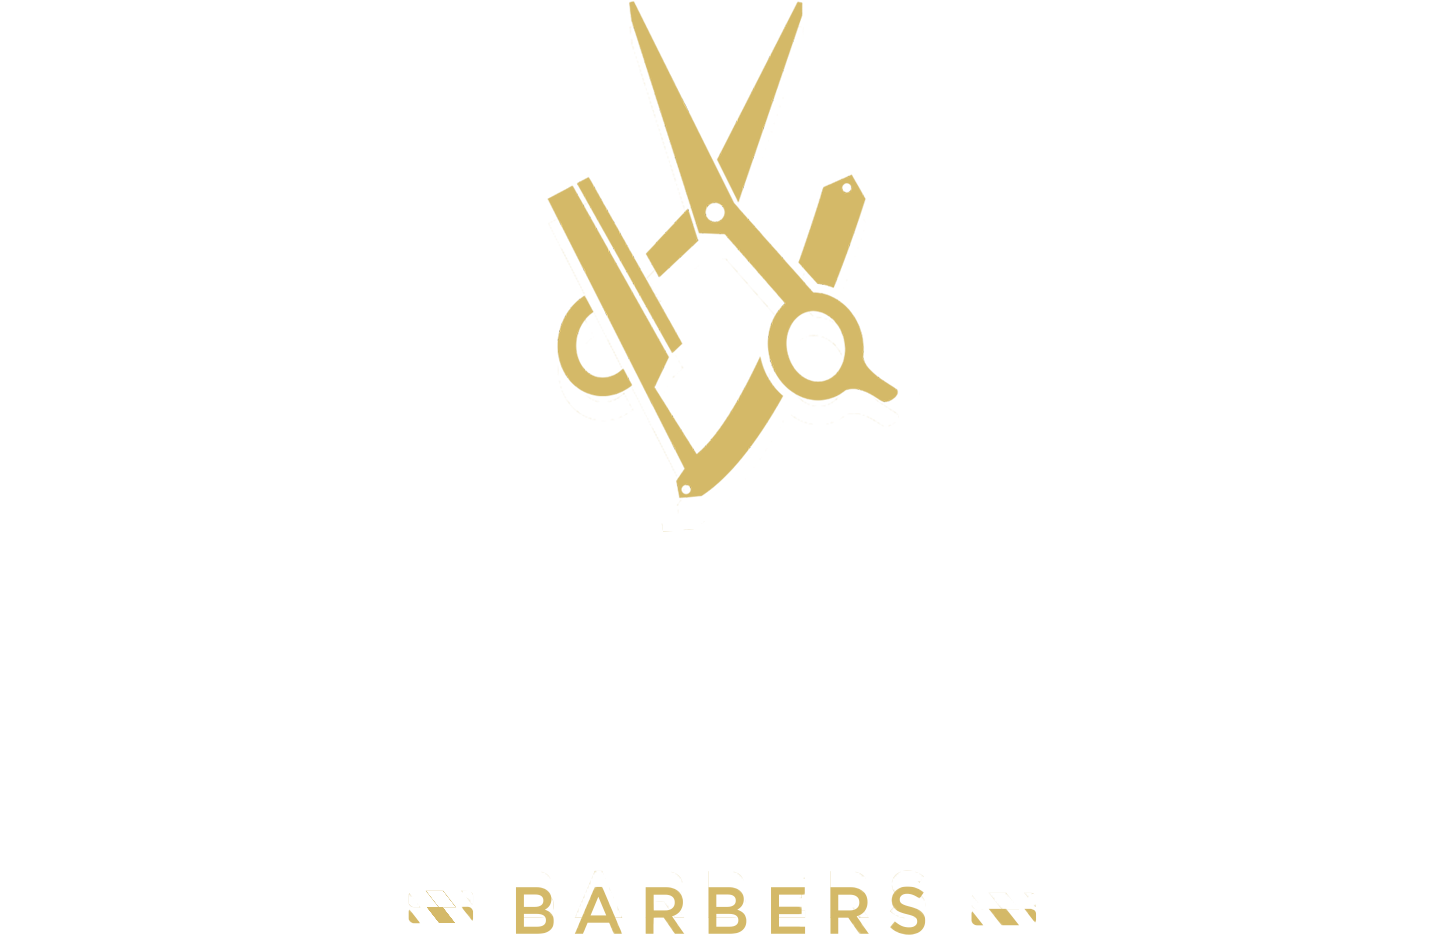 A Logo Of A Barber Shop